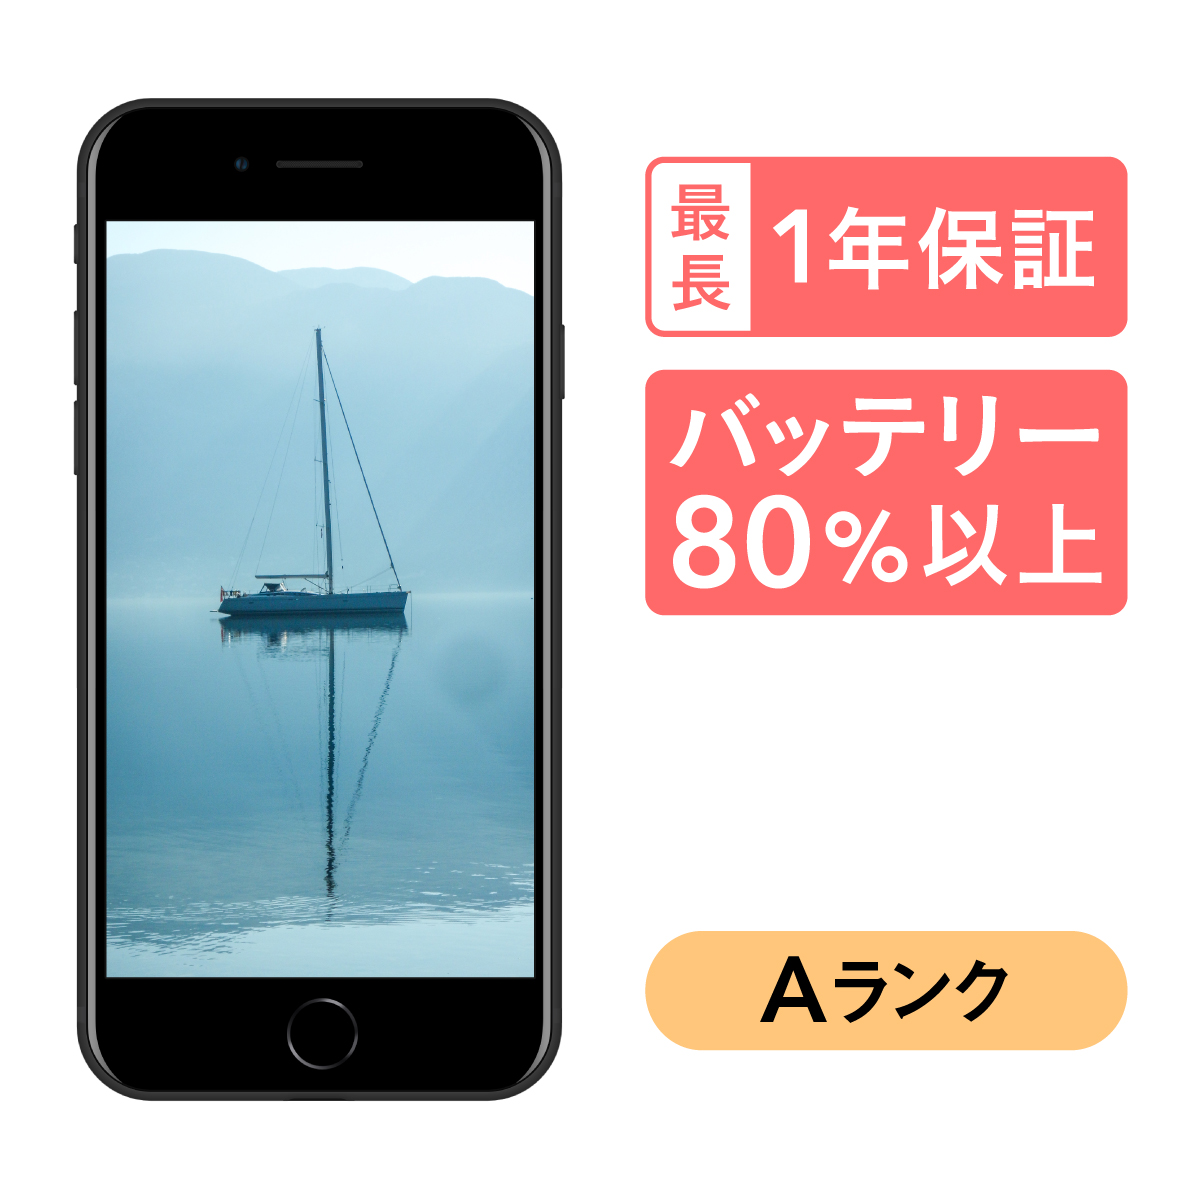 注文SoftBank MX9T2J/A iPhone SE(第2世代) 64GB ホワイト SB iPhone